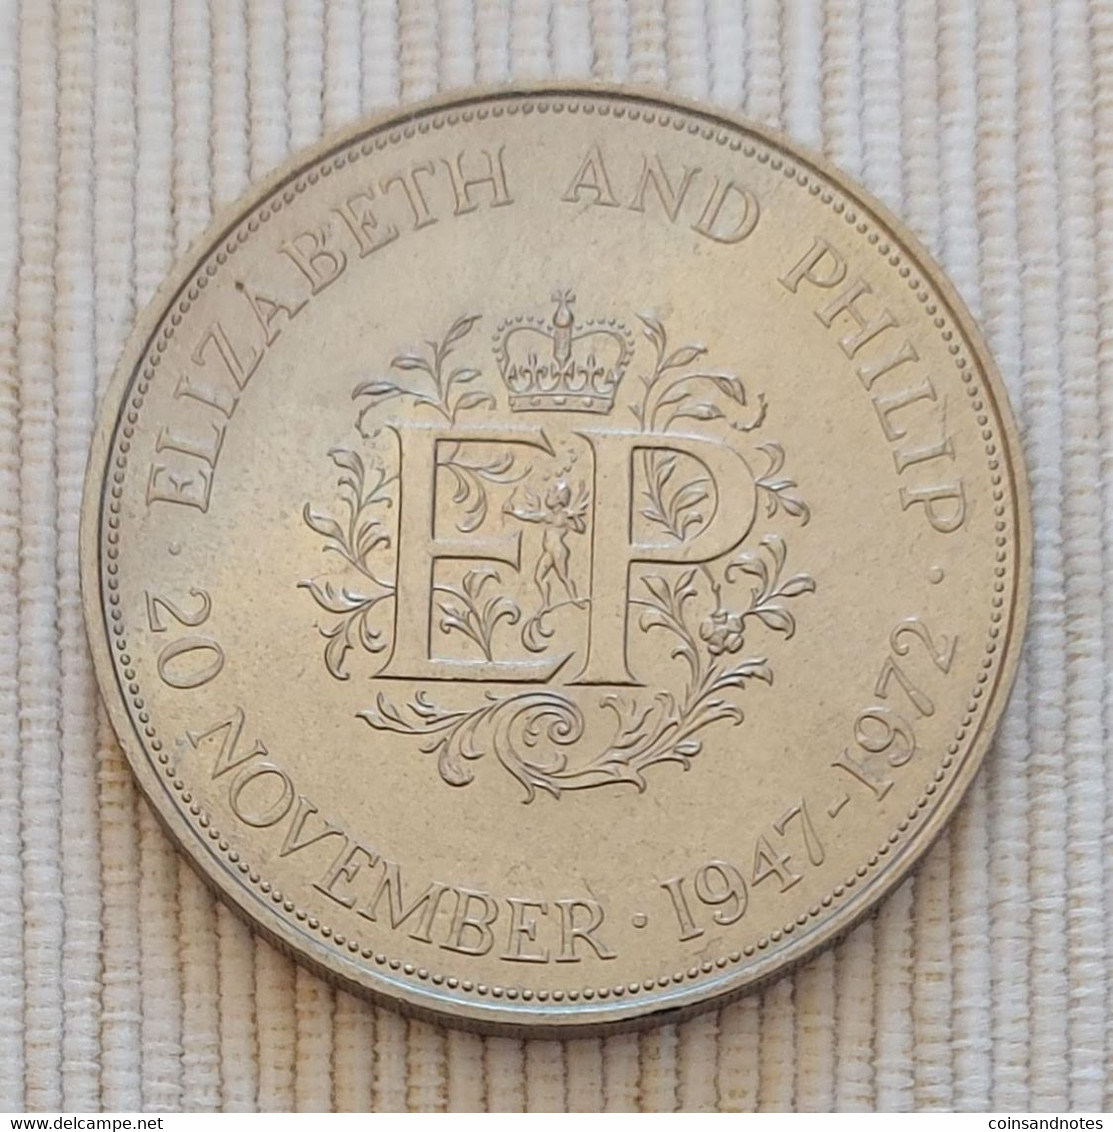 UK 1972 - 25 Pence - Elizabeth II - Silver Wedding - KM# 917 - 25 New Pence